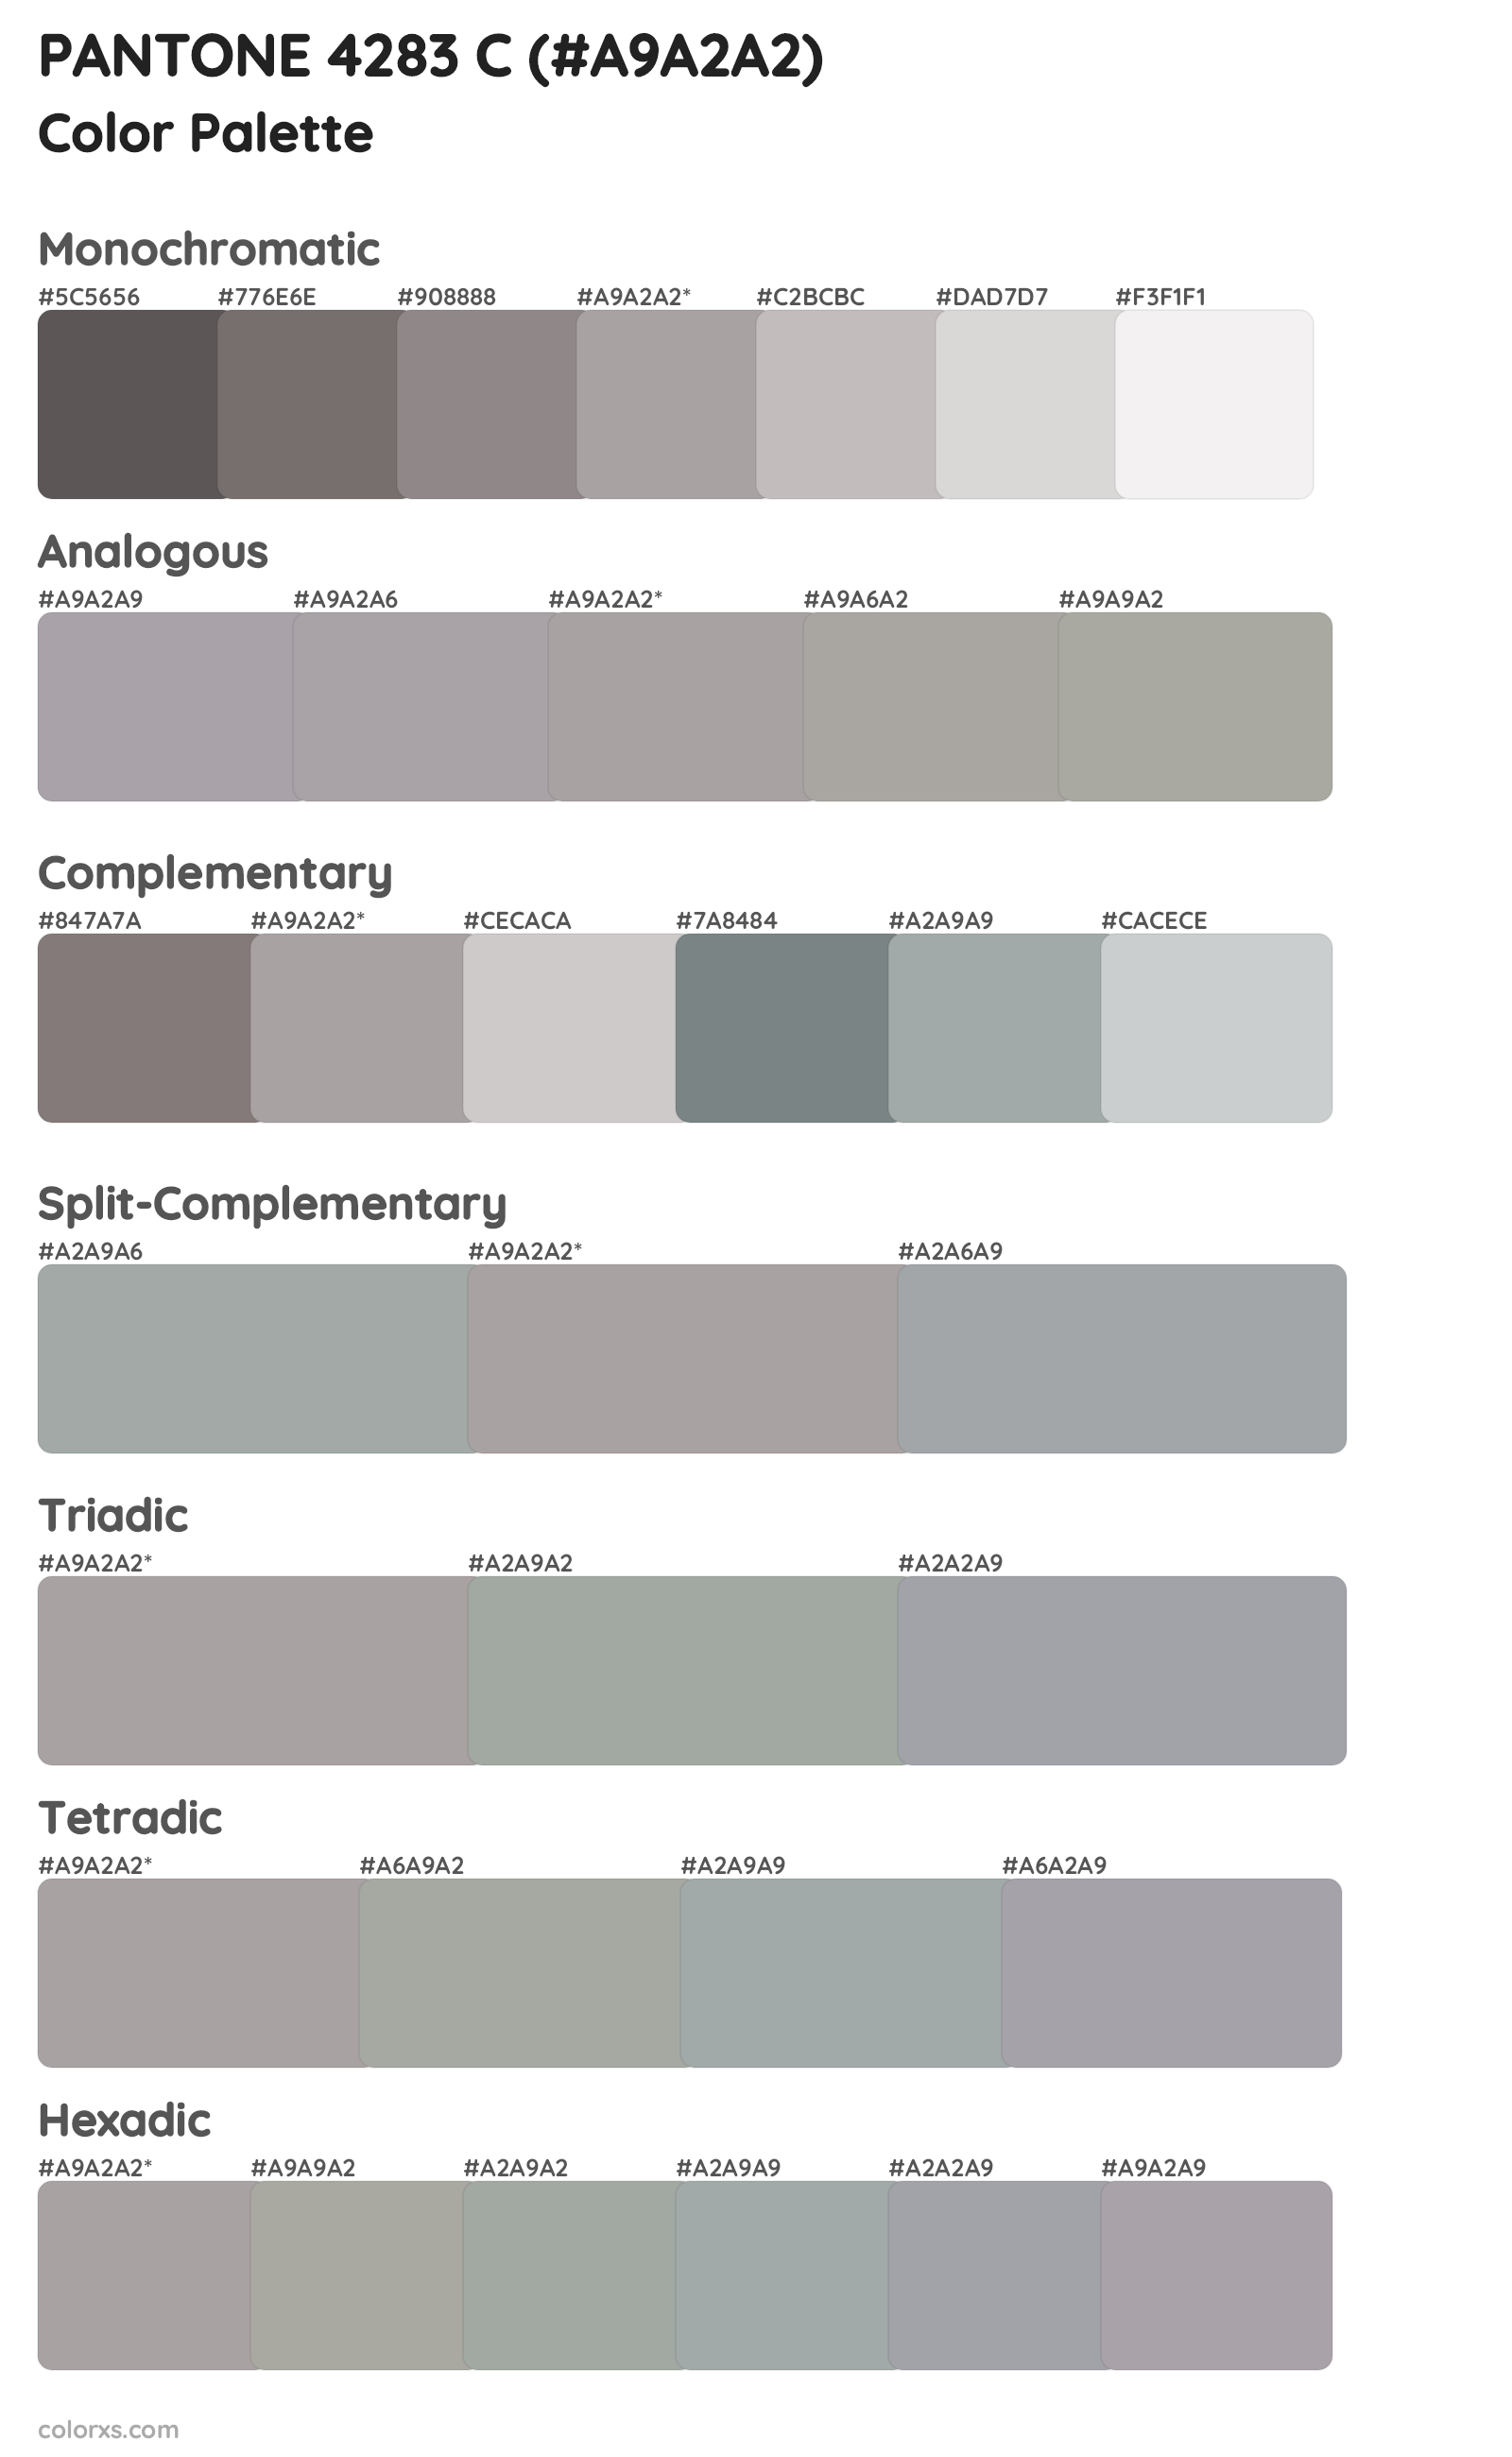 PANTONE 4283 C Color Scheme Palettes